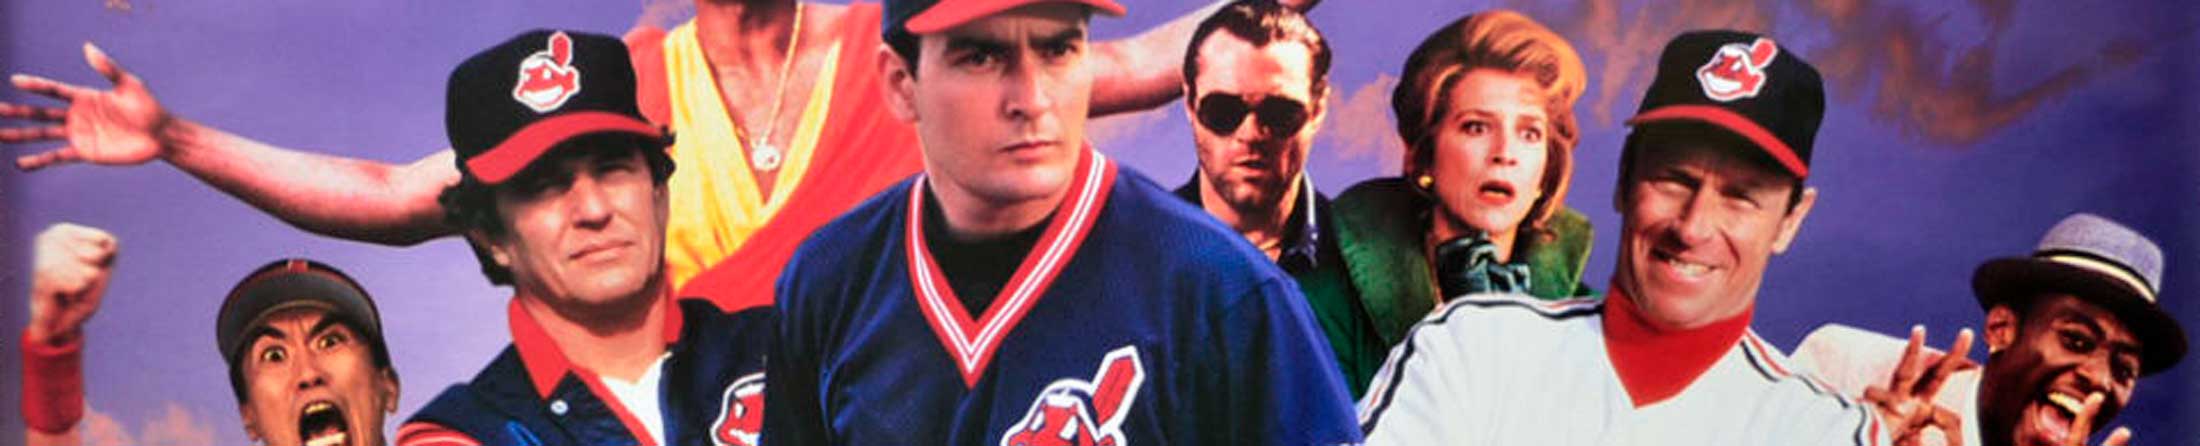 Major League II - Movies - Baseball Life